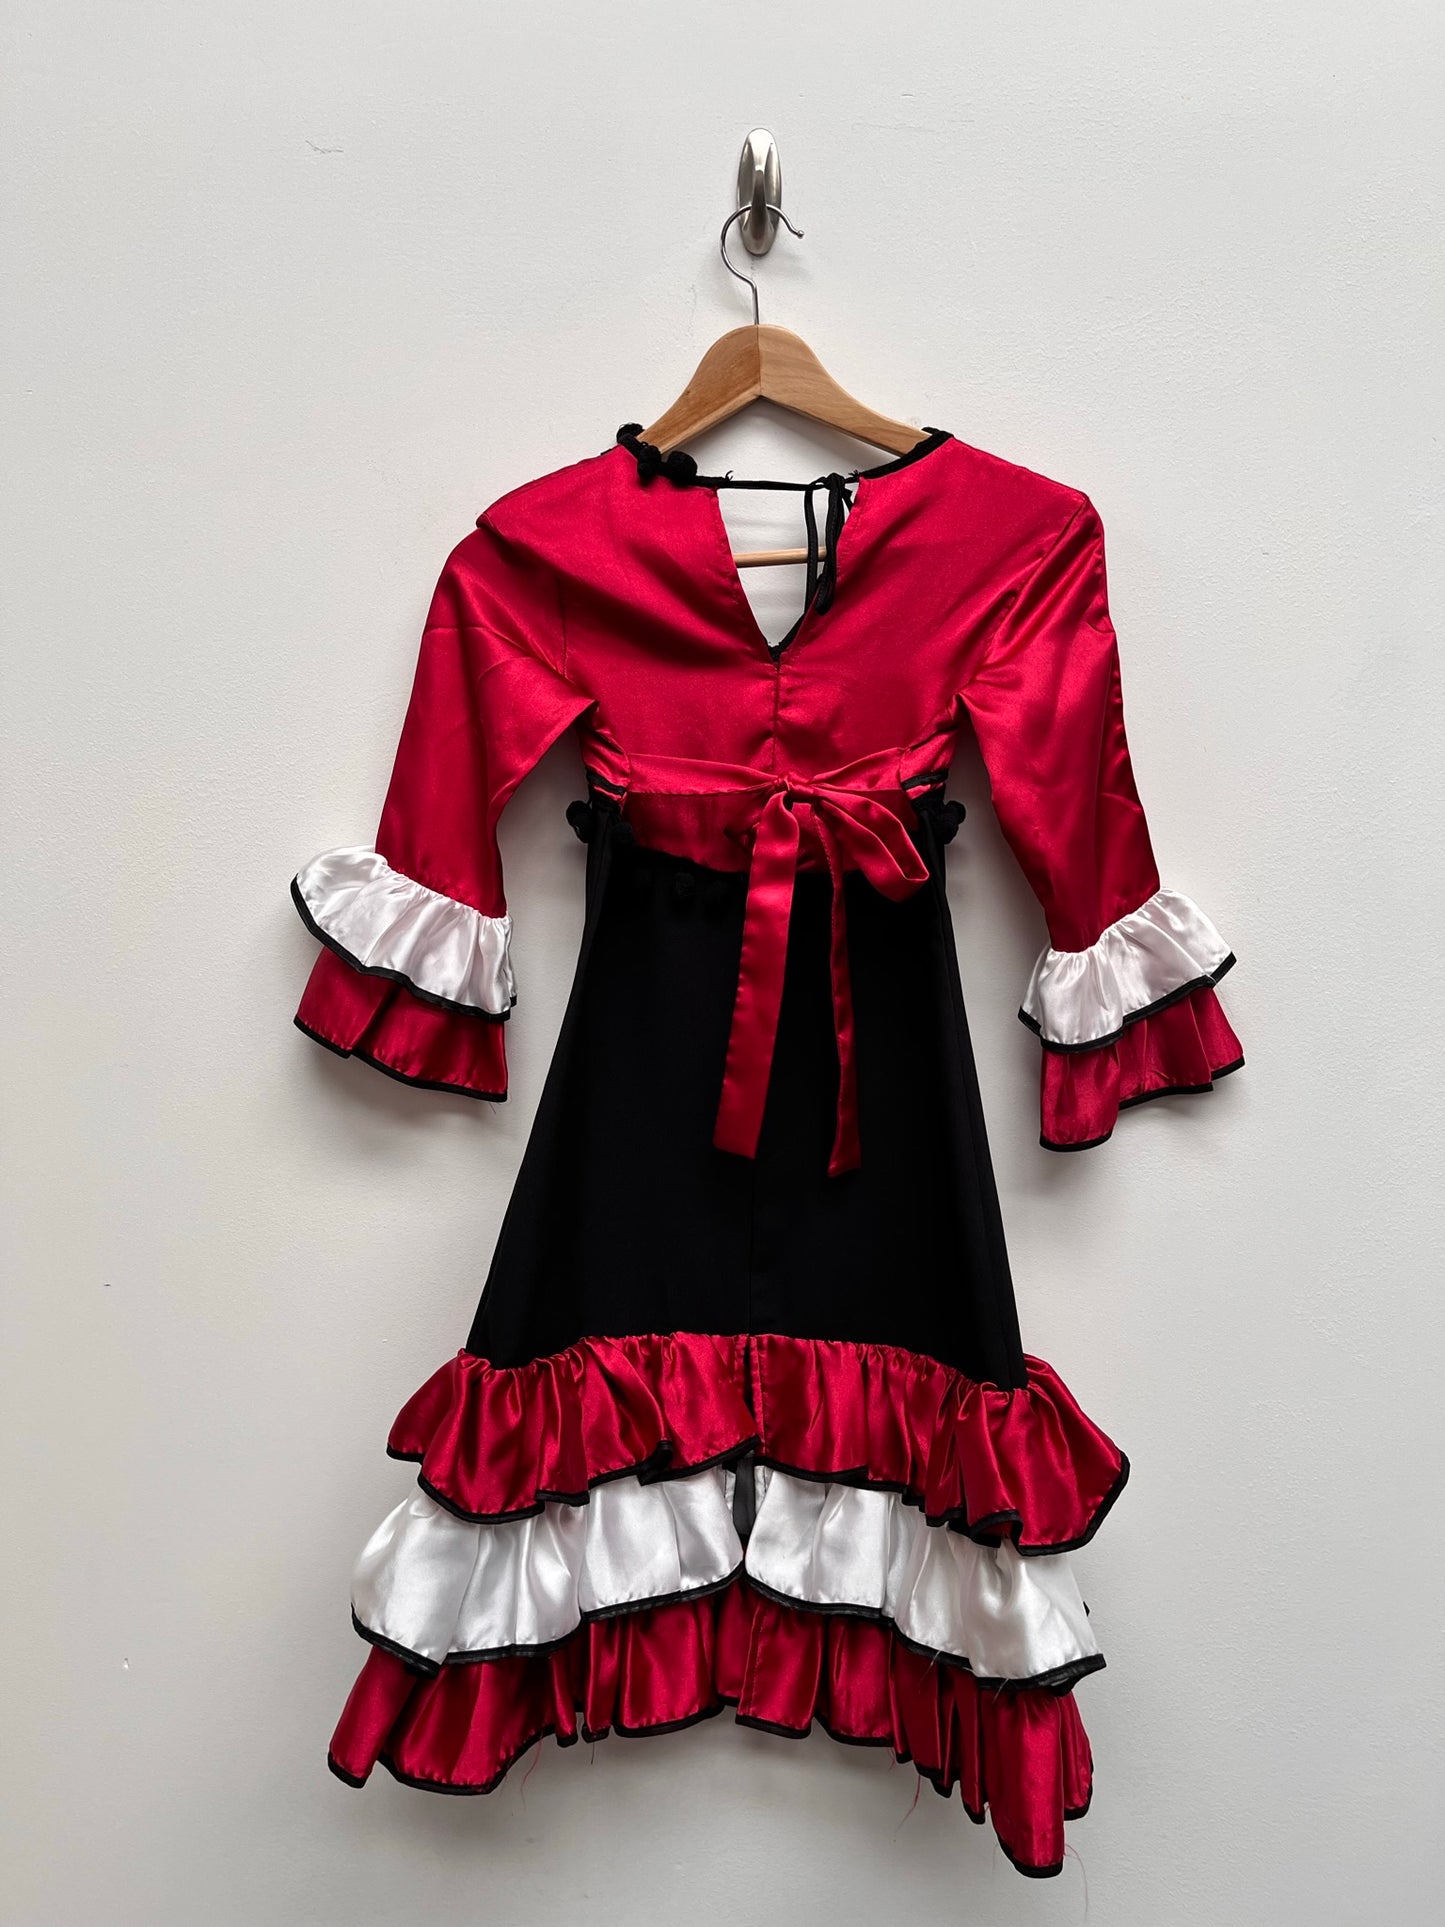 Childs Red, White & Black Spanish Senorita Dress 8 years